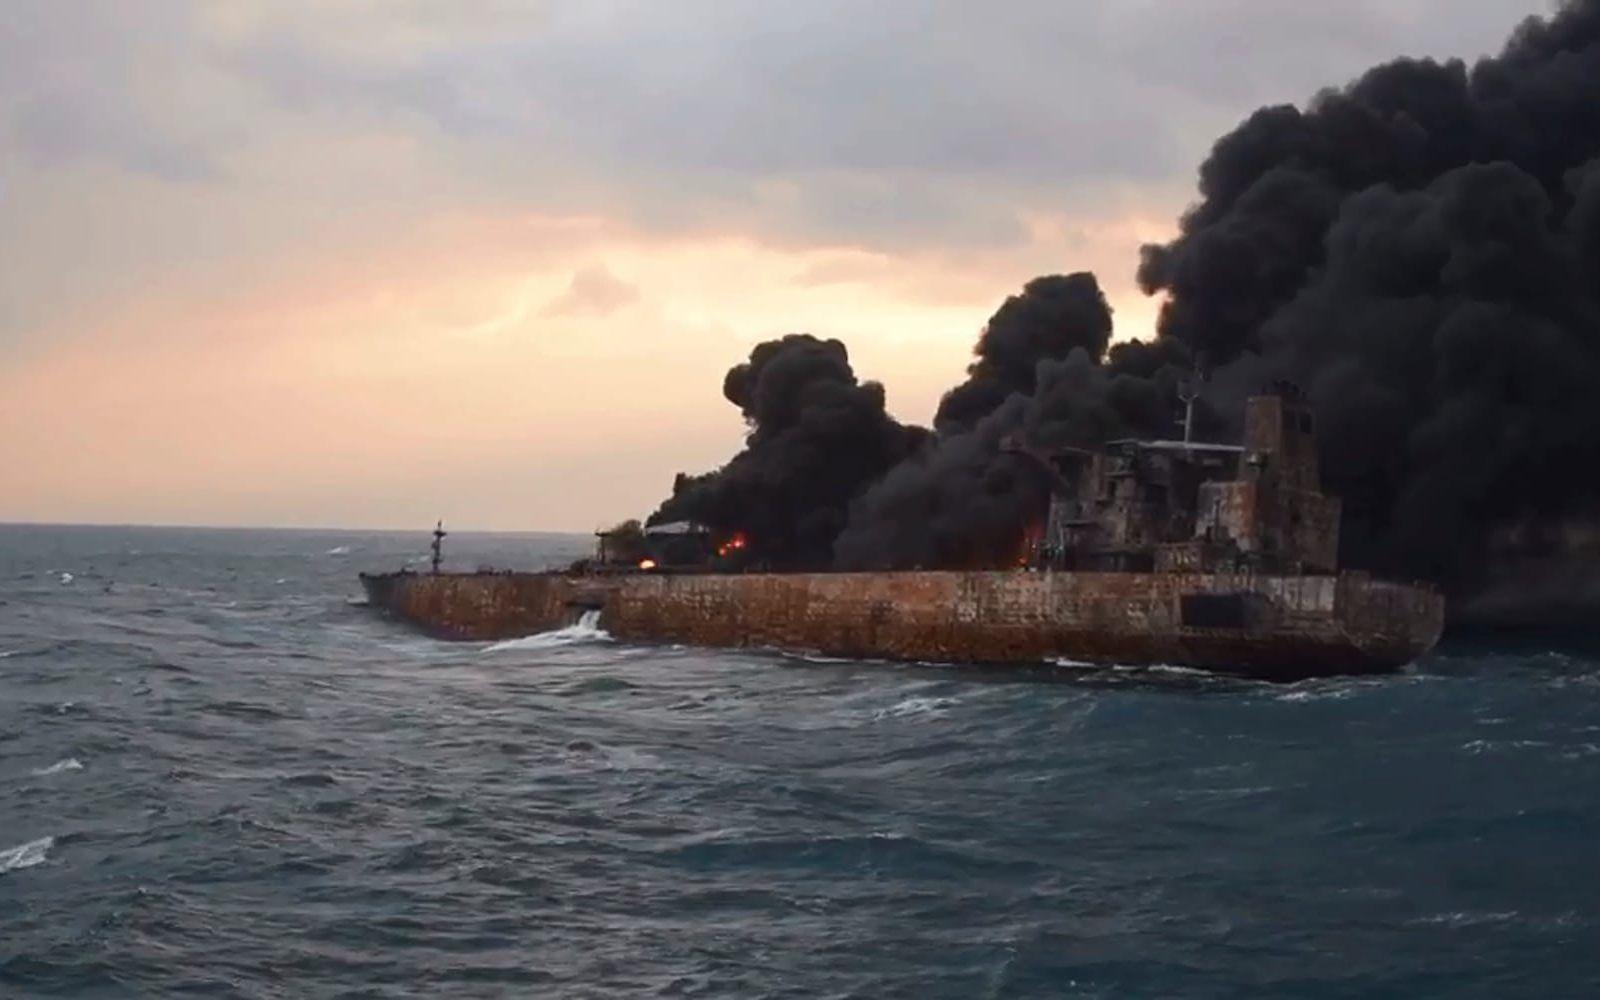 29 av fartygets 32 besättningsmän saknas fortfarande. Tre personer har hittats omkomna. Bild: AP. 